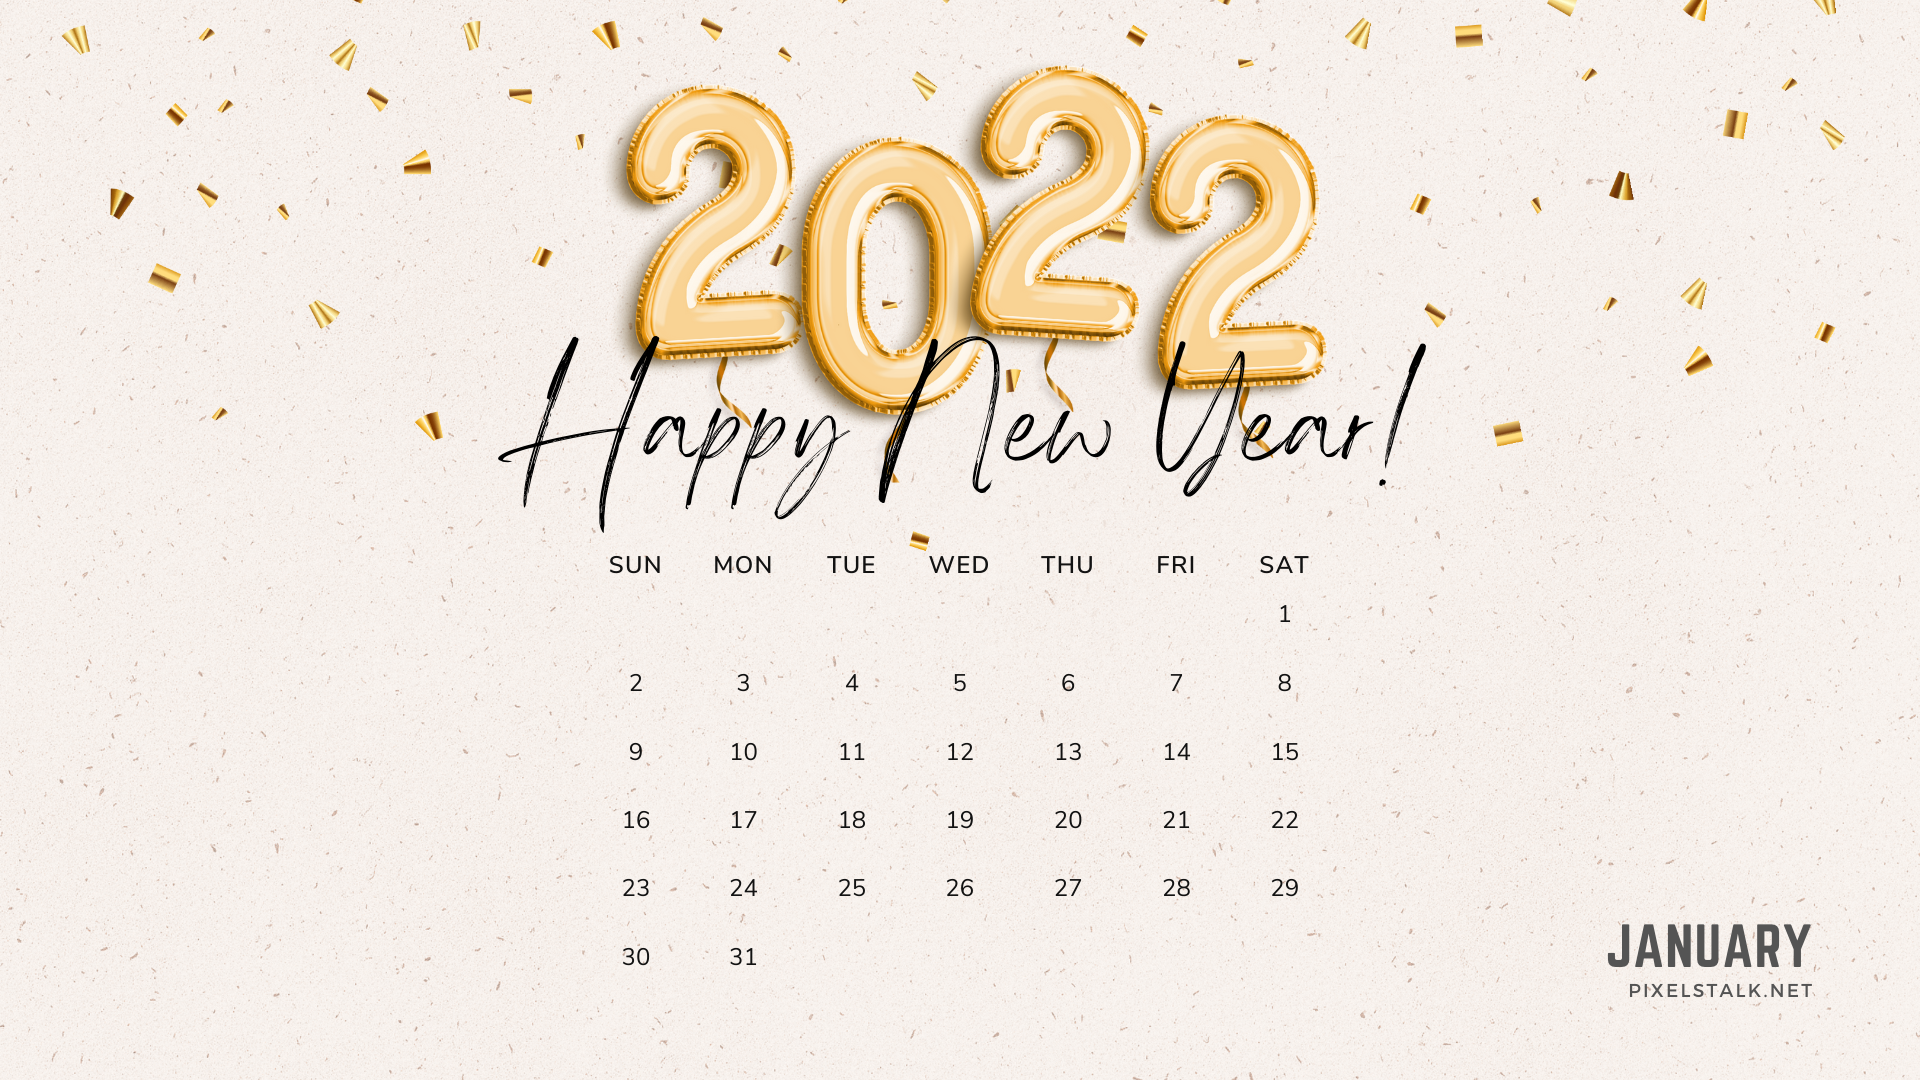 January Calendar Wallpaper For Desktop